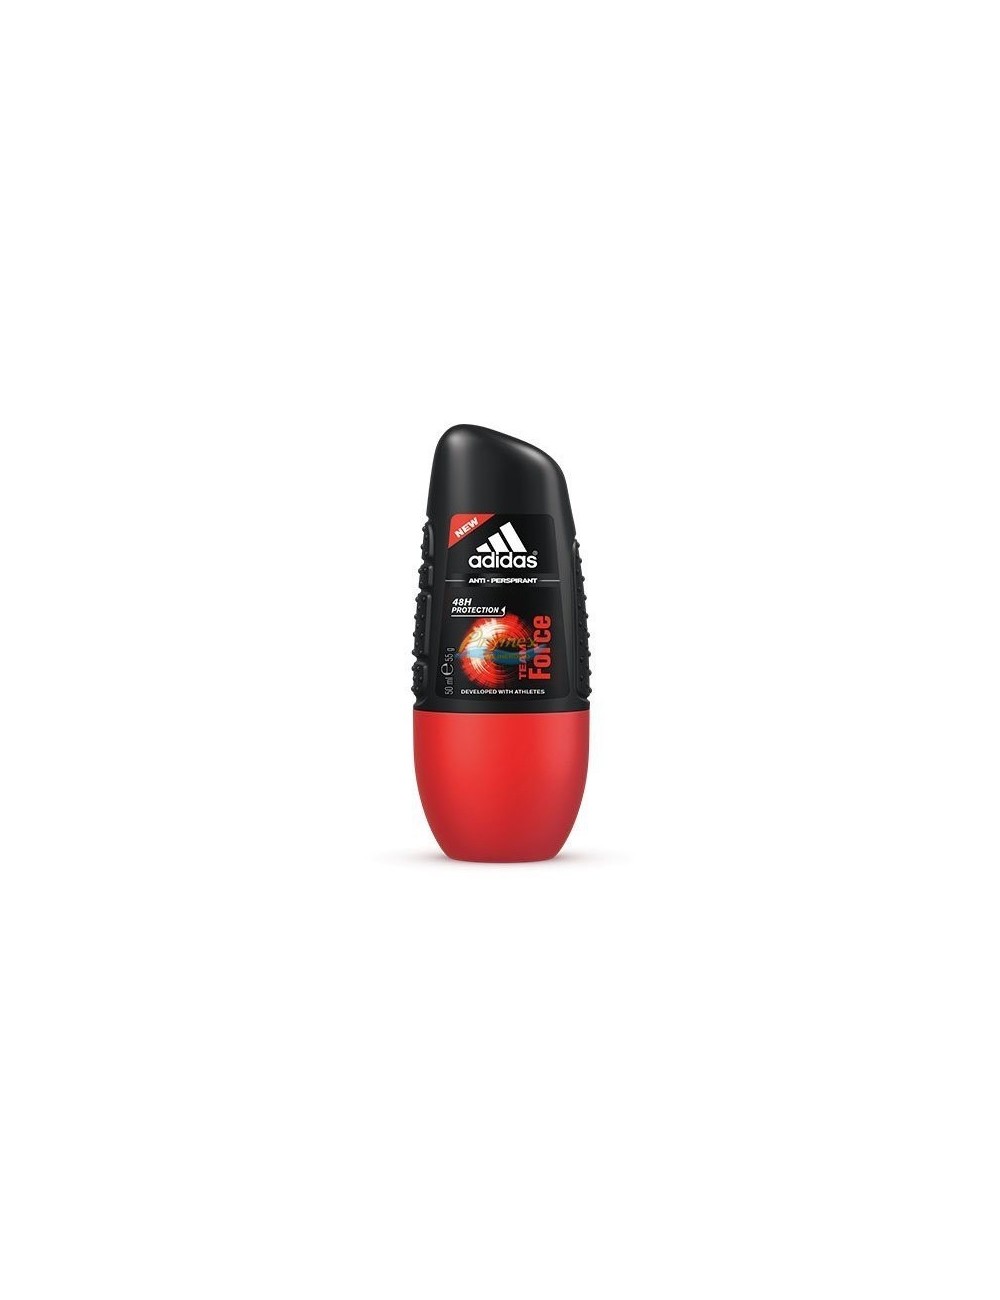 Adidas Team Force Antyperspirant Męski Roll-on 50ml